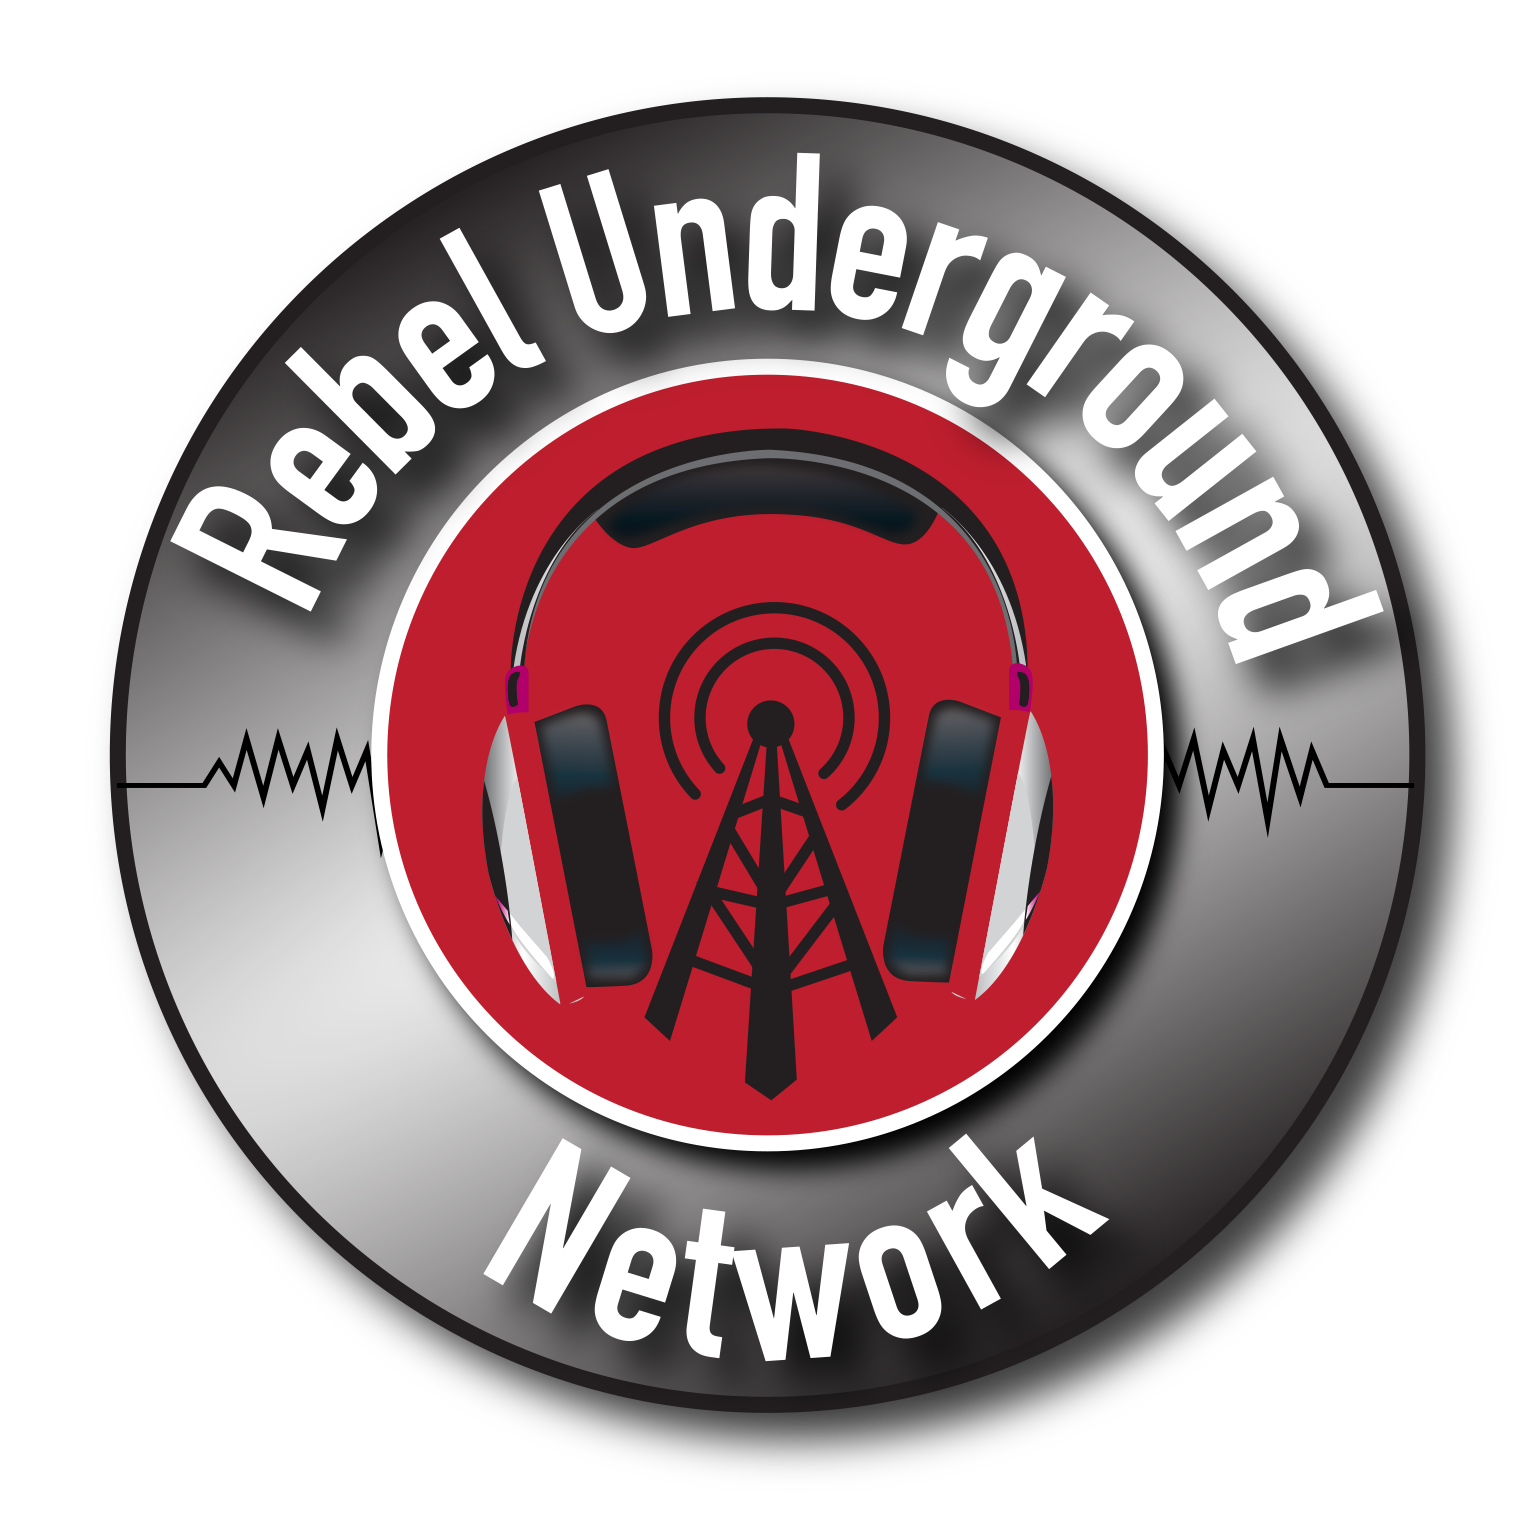 Rebel Underground Network (R.U.N.)